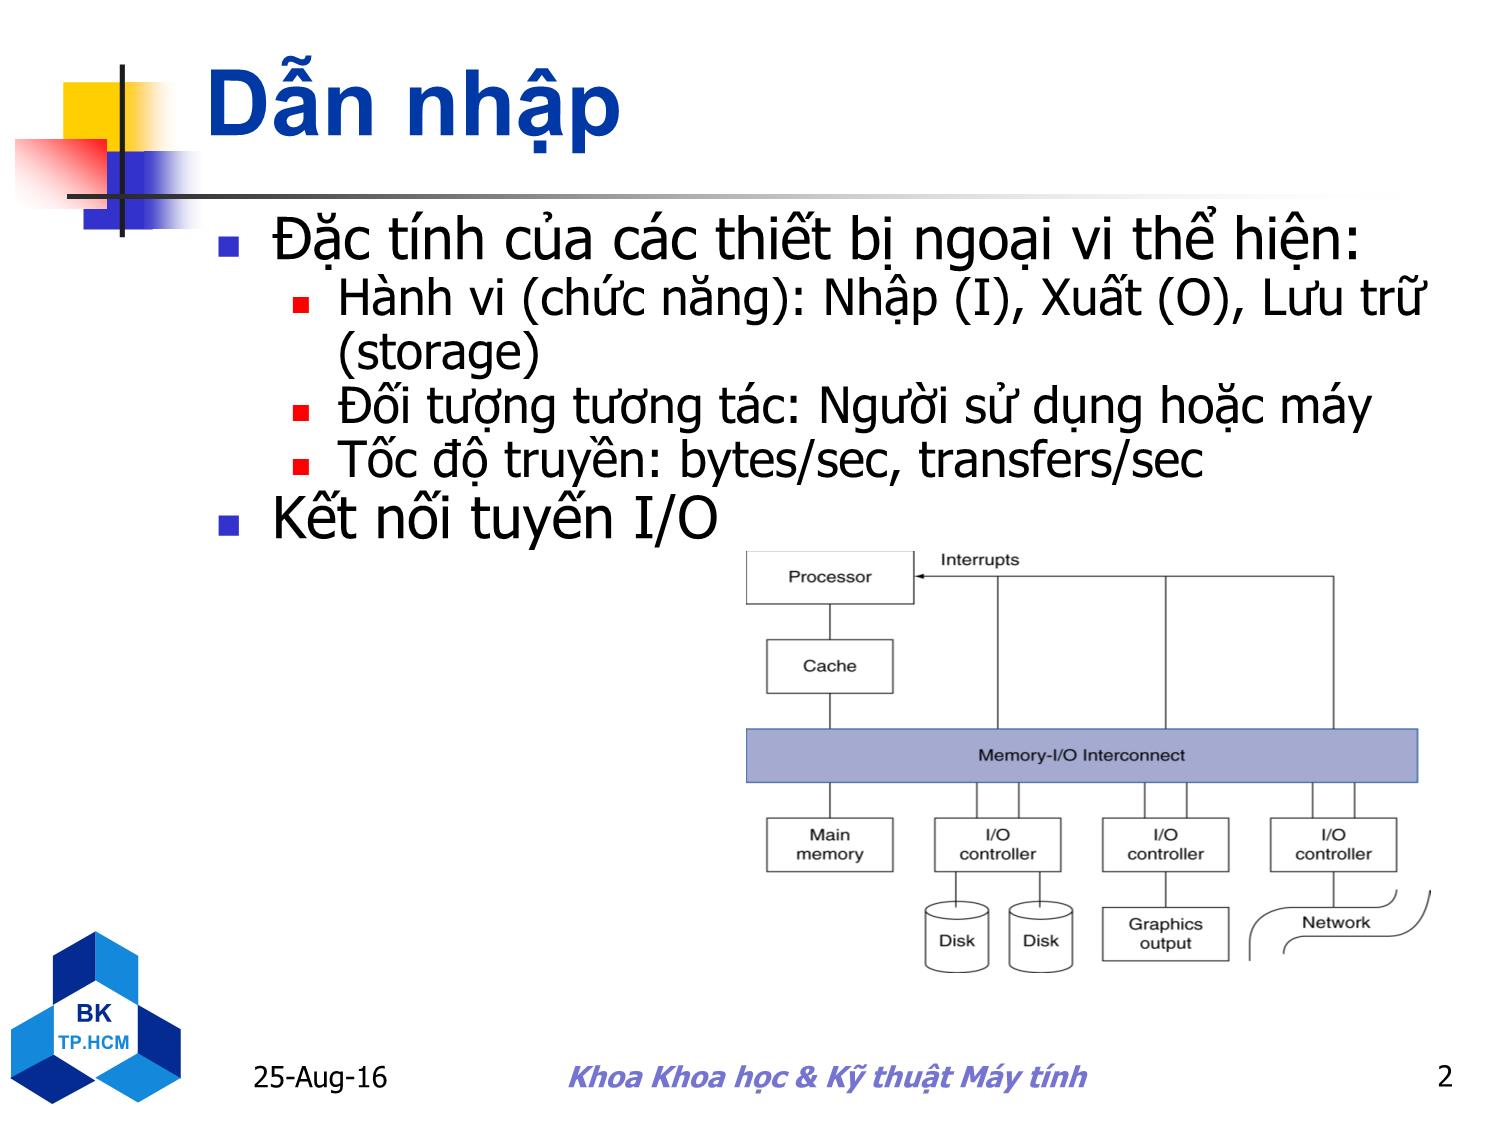 Bài giảng Kiến trúc máy tính - Chương 6: Hệ thống lưu trữ và các thiết bị xuất/nhập khác - Nguyễn Thanh Sơn trang 2